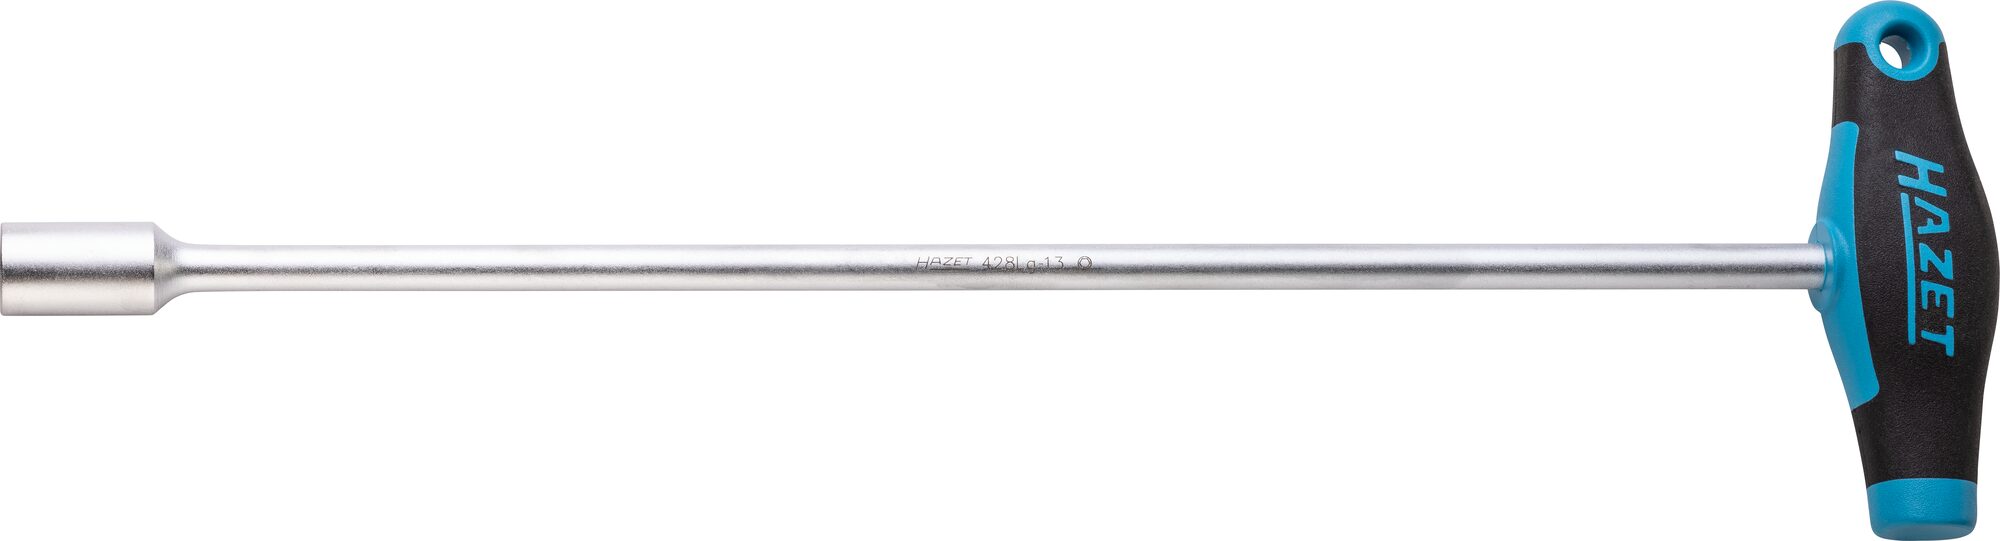 HAZET Steckschlüssel · mit T-Griff 428LG-13 · Außen Sechskant Profil · 13 mm